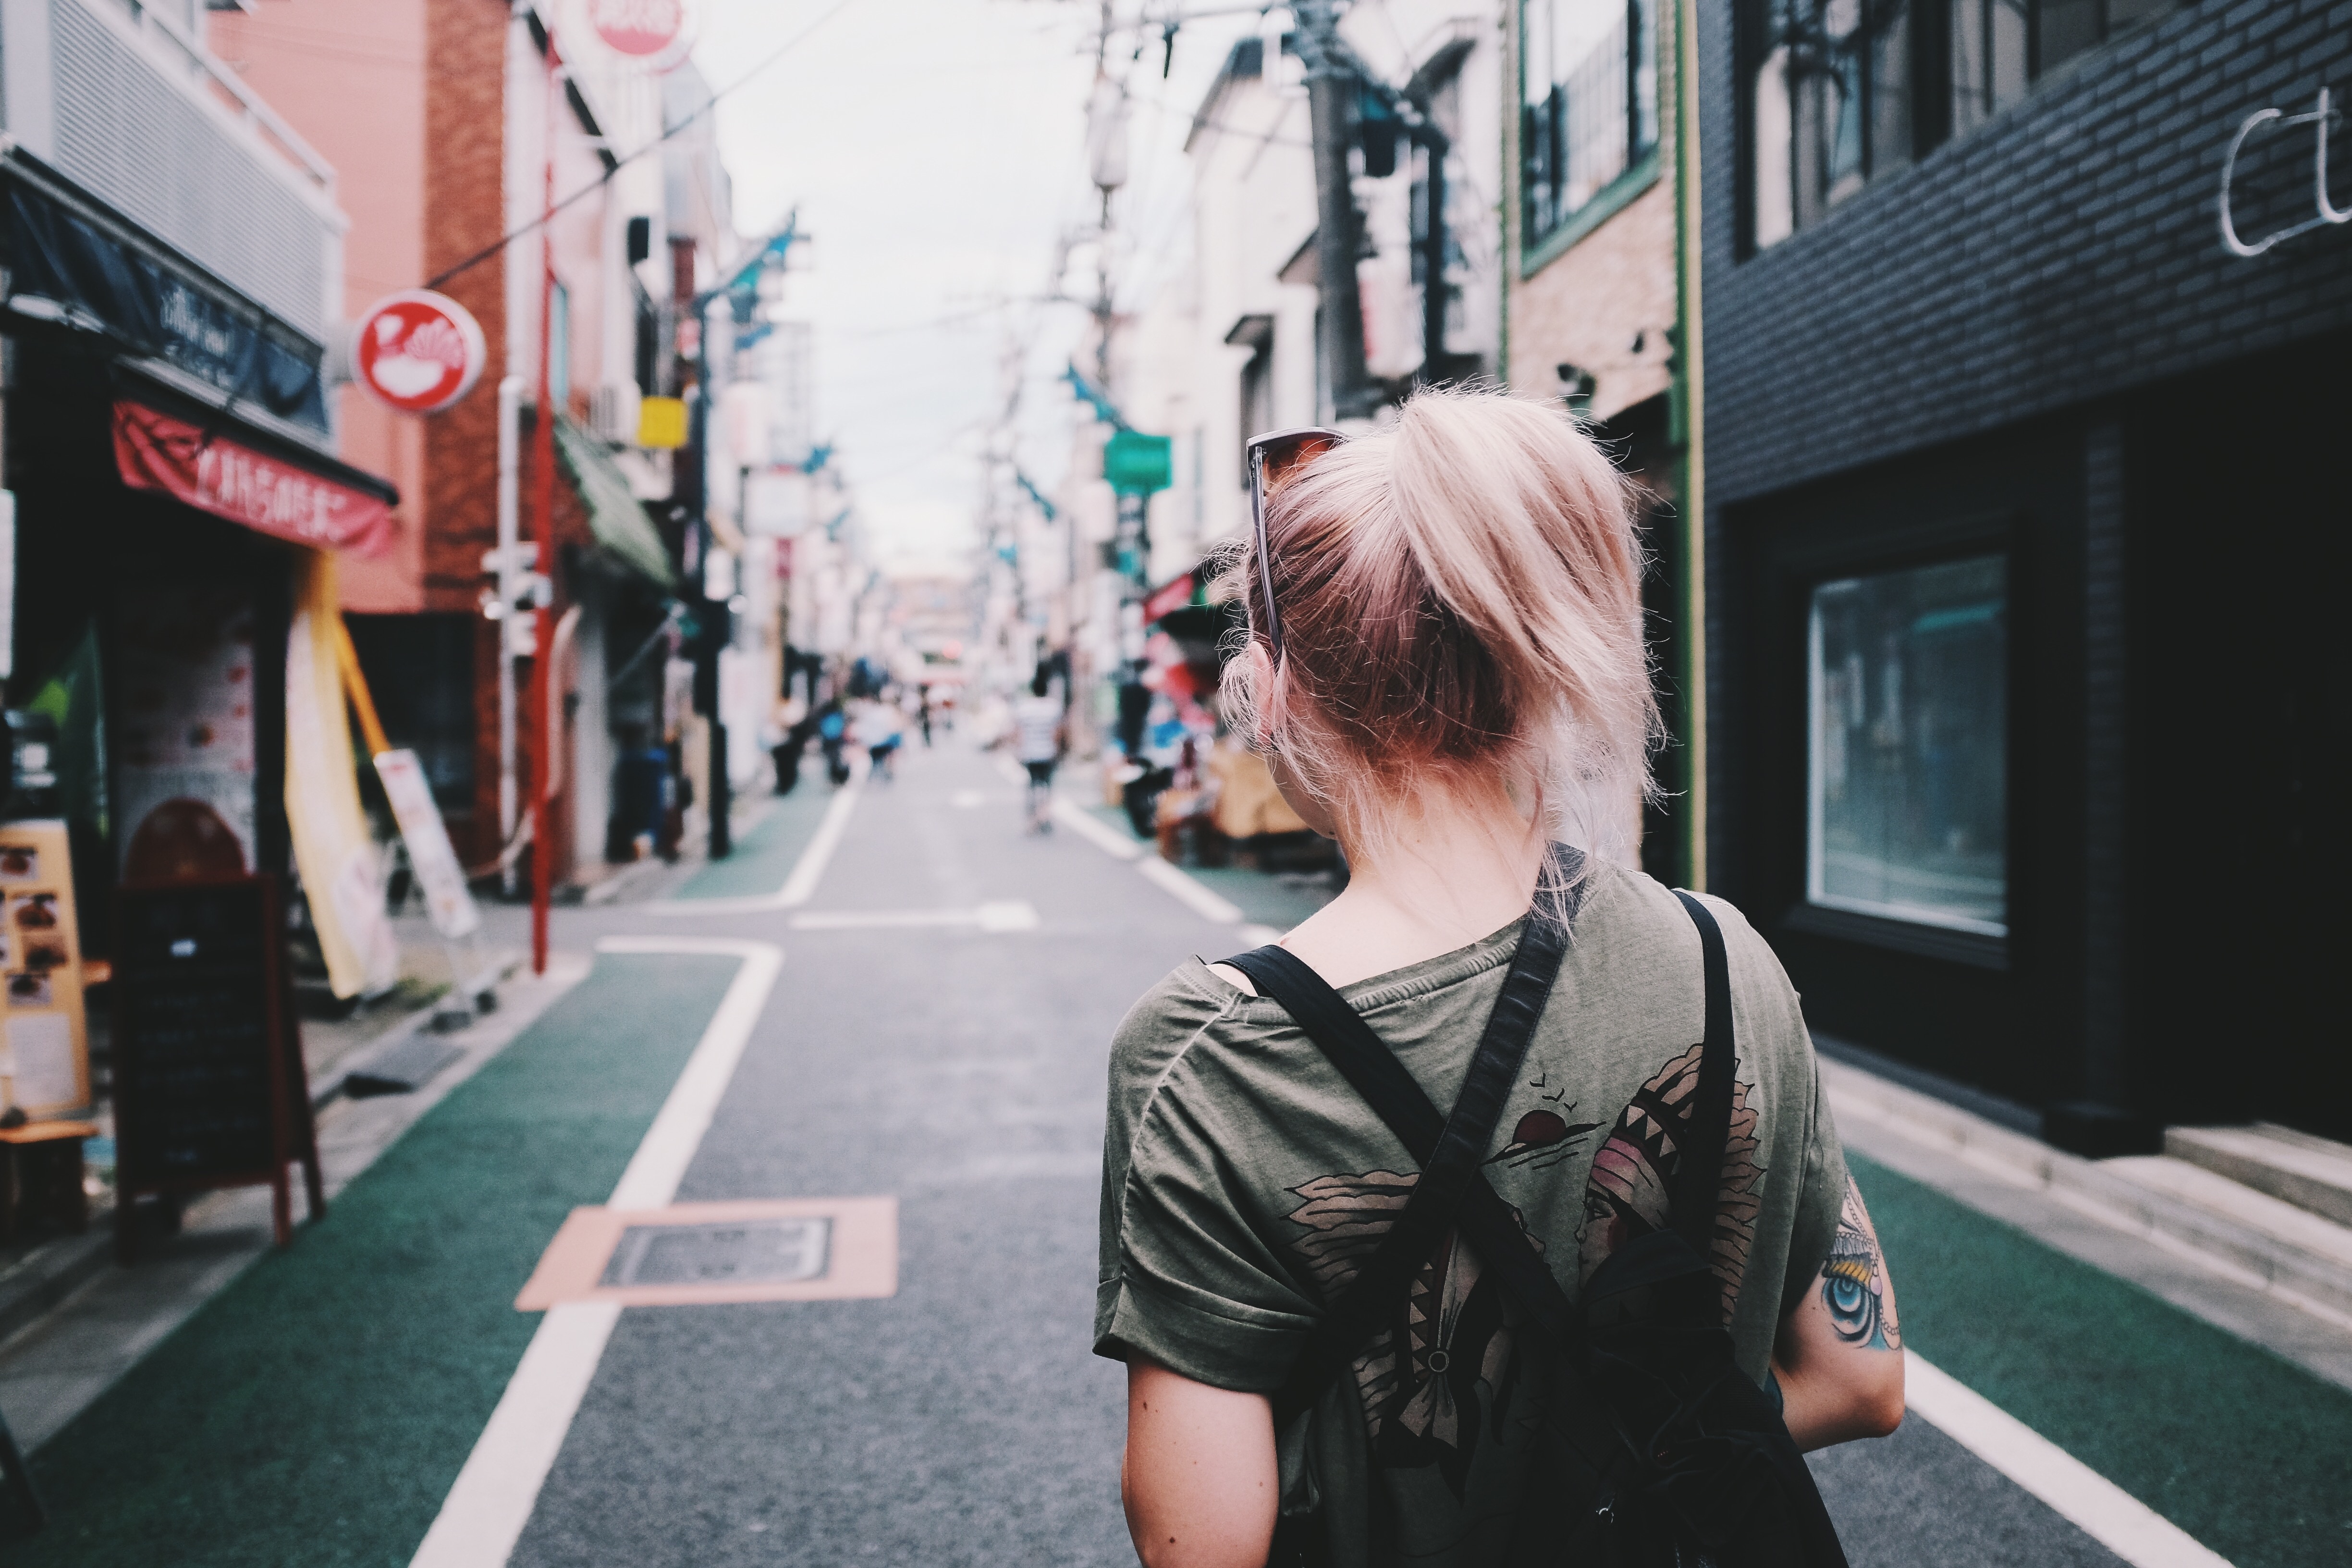 woman with backpack walking on street between buildings